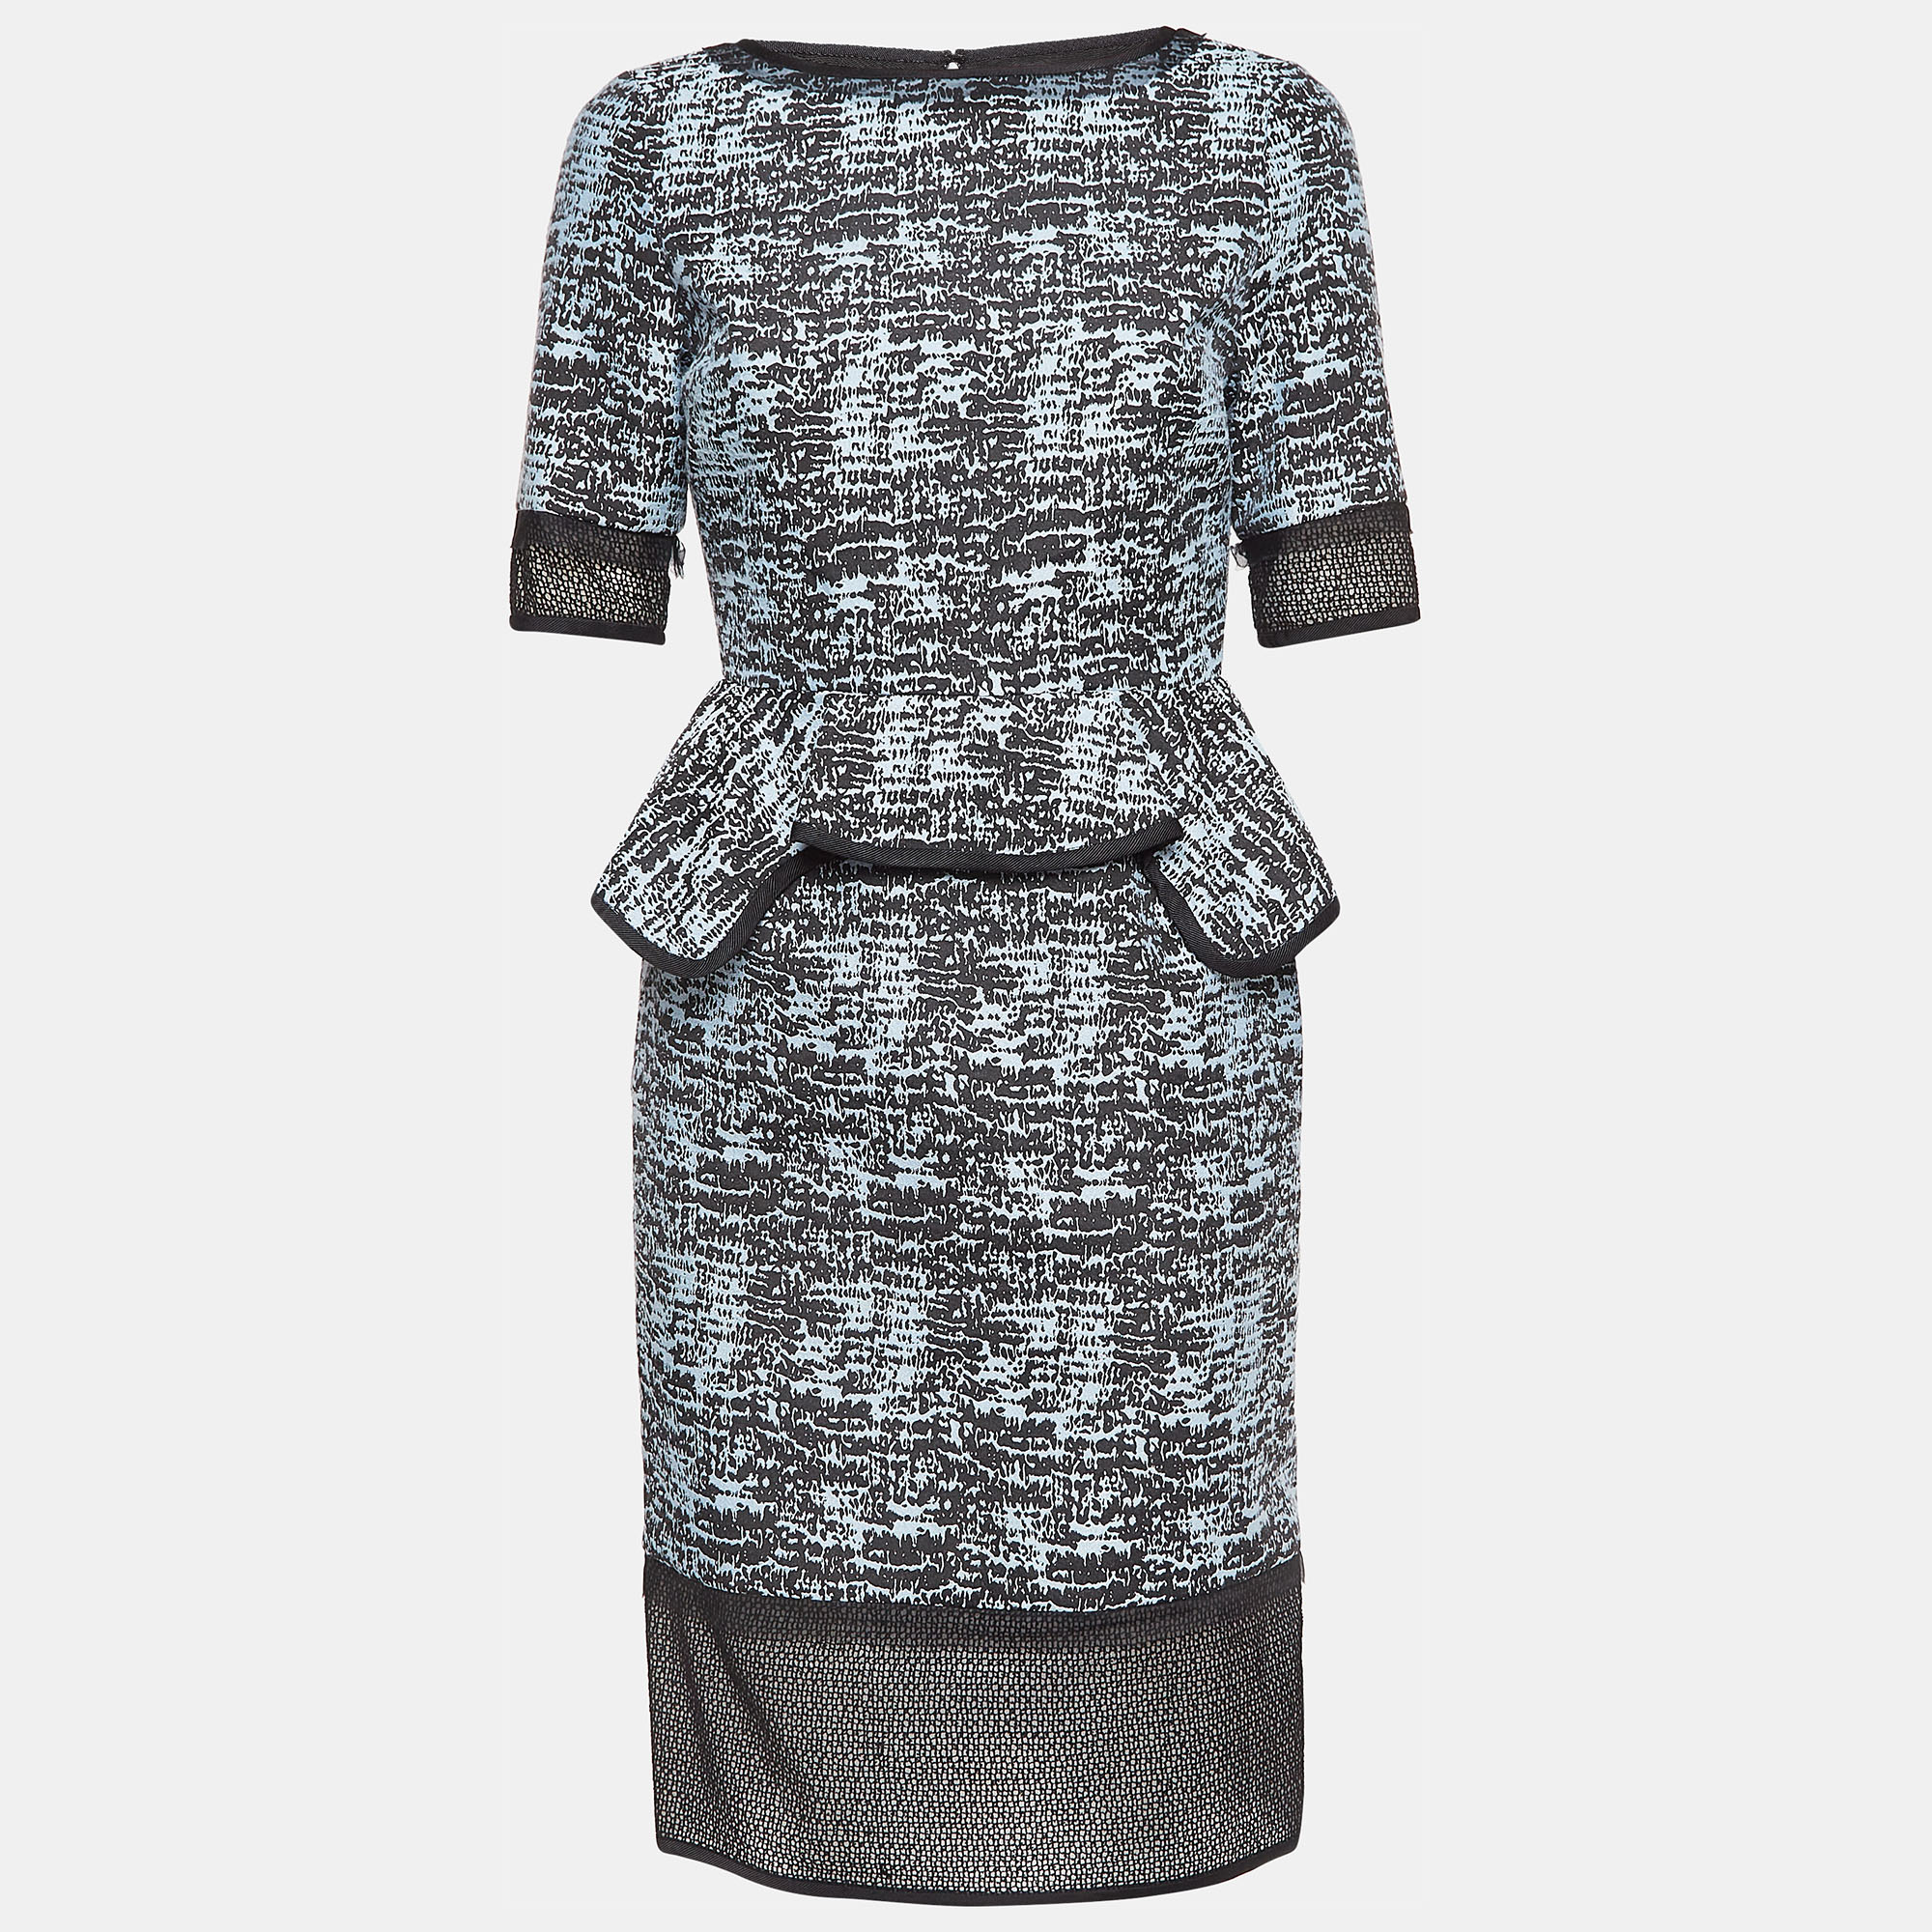 

Jonathan Simkhai Blue/Black Patterned Nylon and Cotton Short Dress